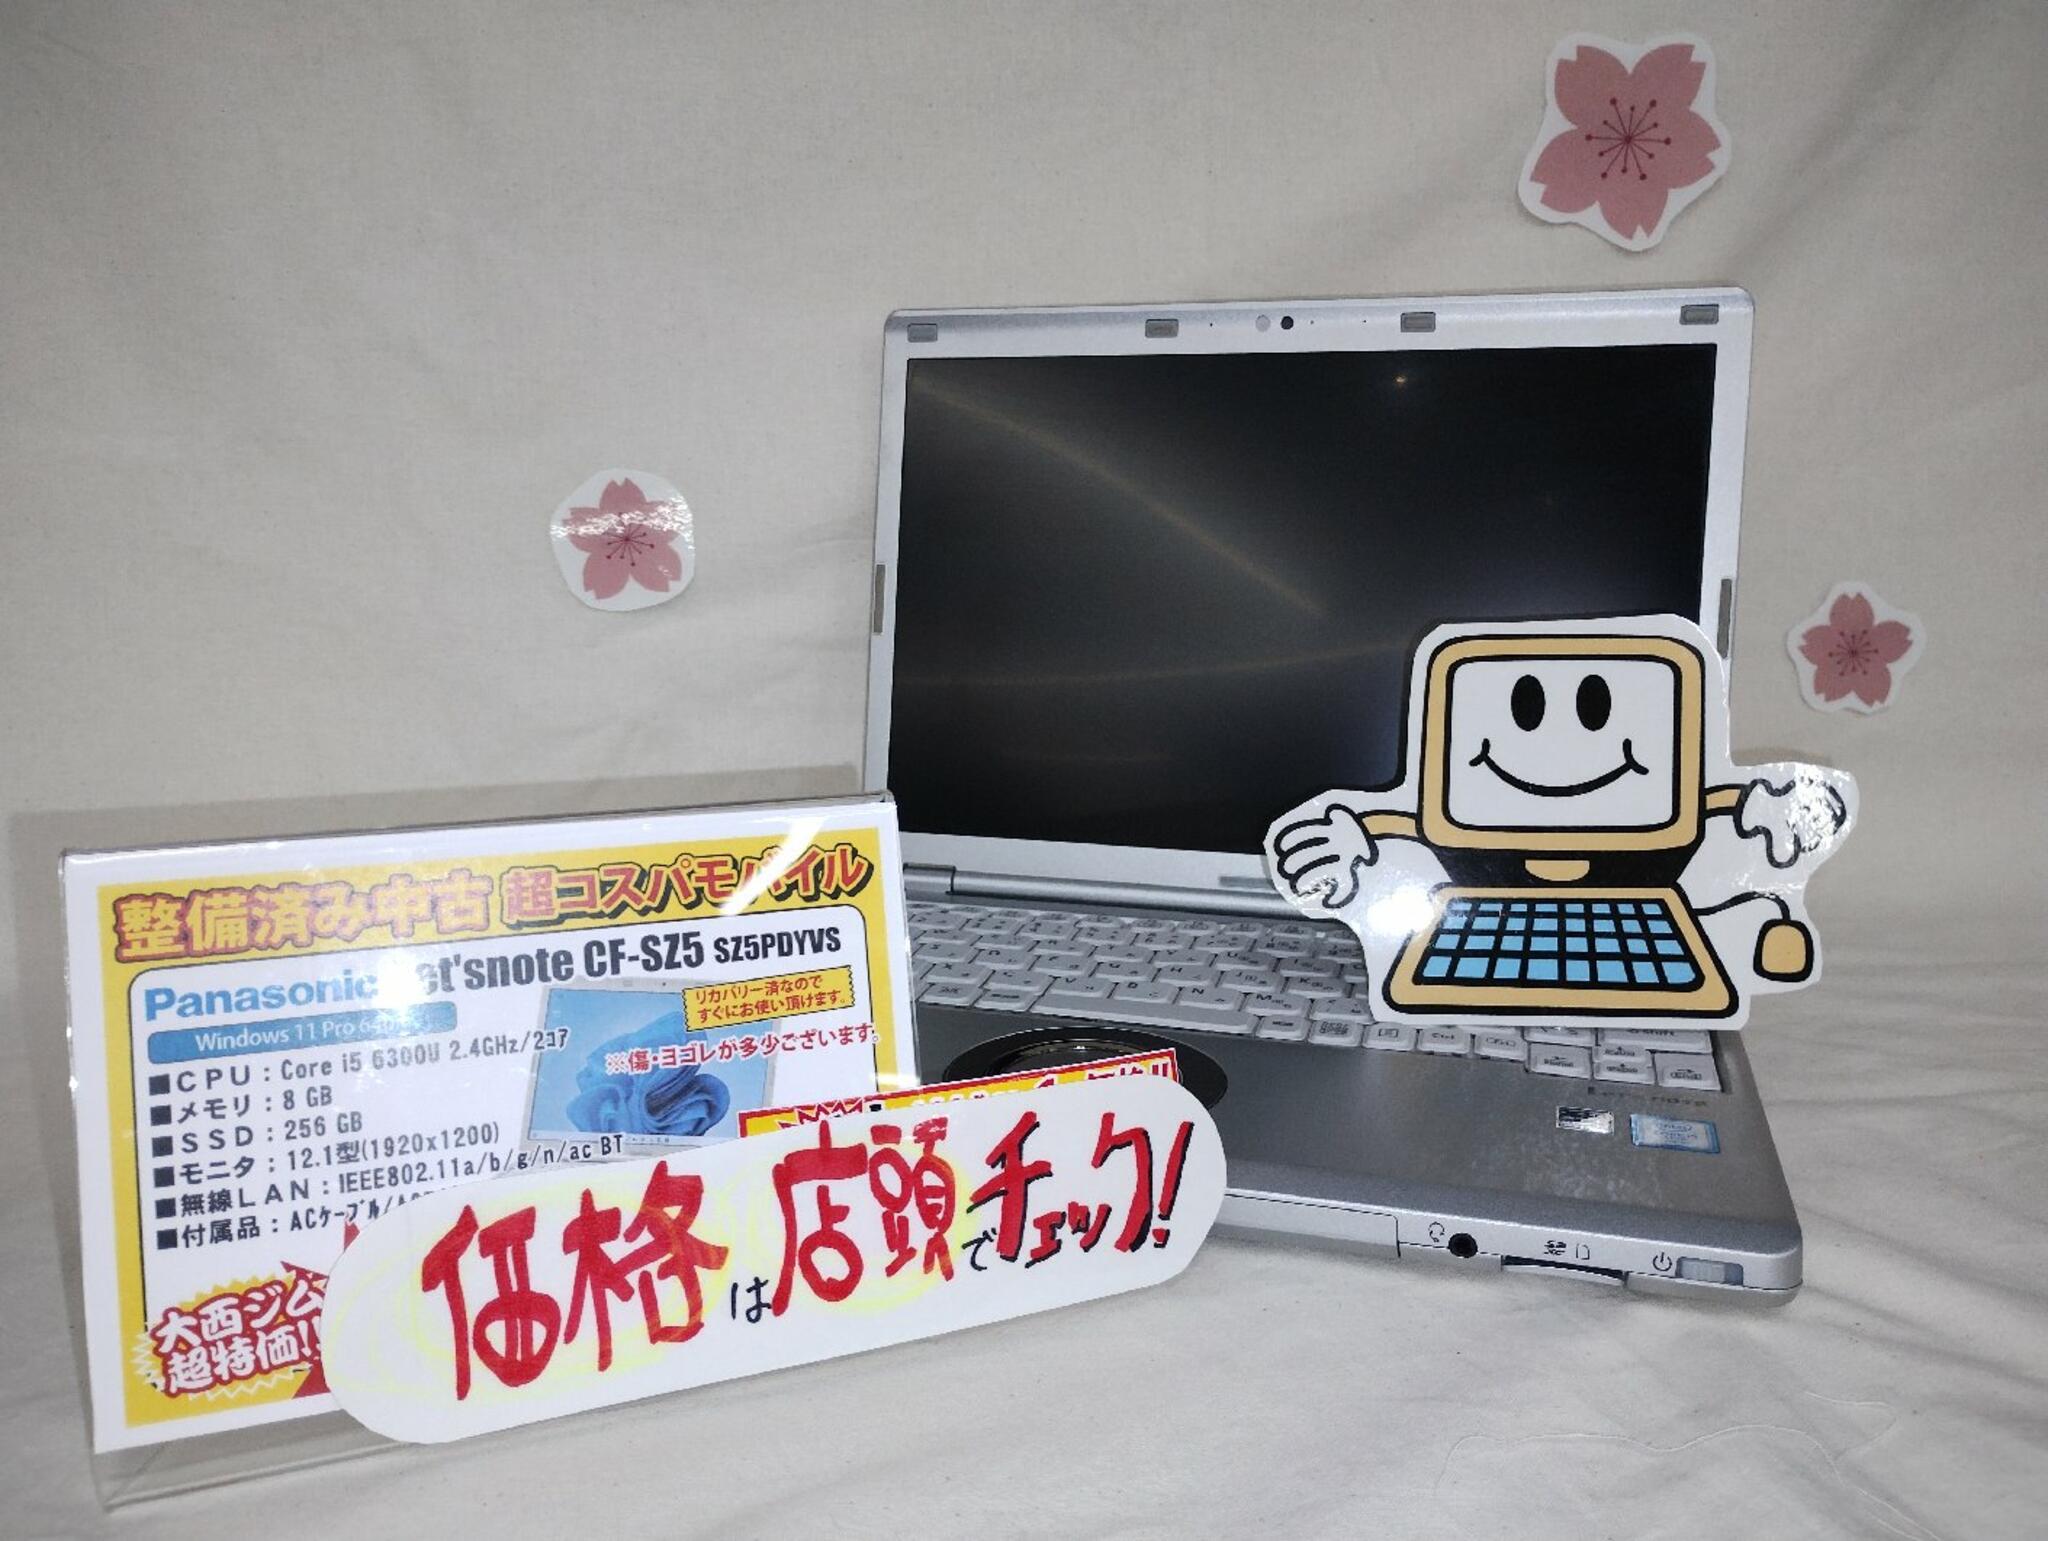 パソコン専門店 大西ジム 新長田店からのお知らせ(中古ノートPC「レッツノート SZ5」入荷しました。)に関する写真